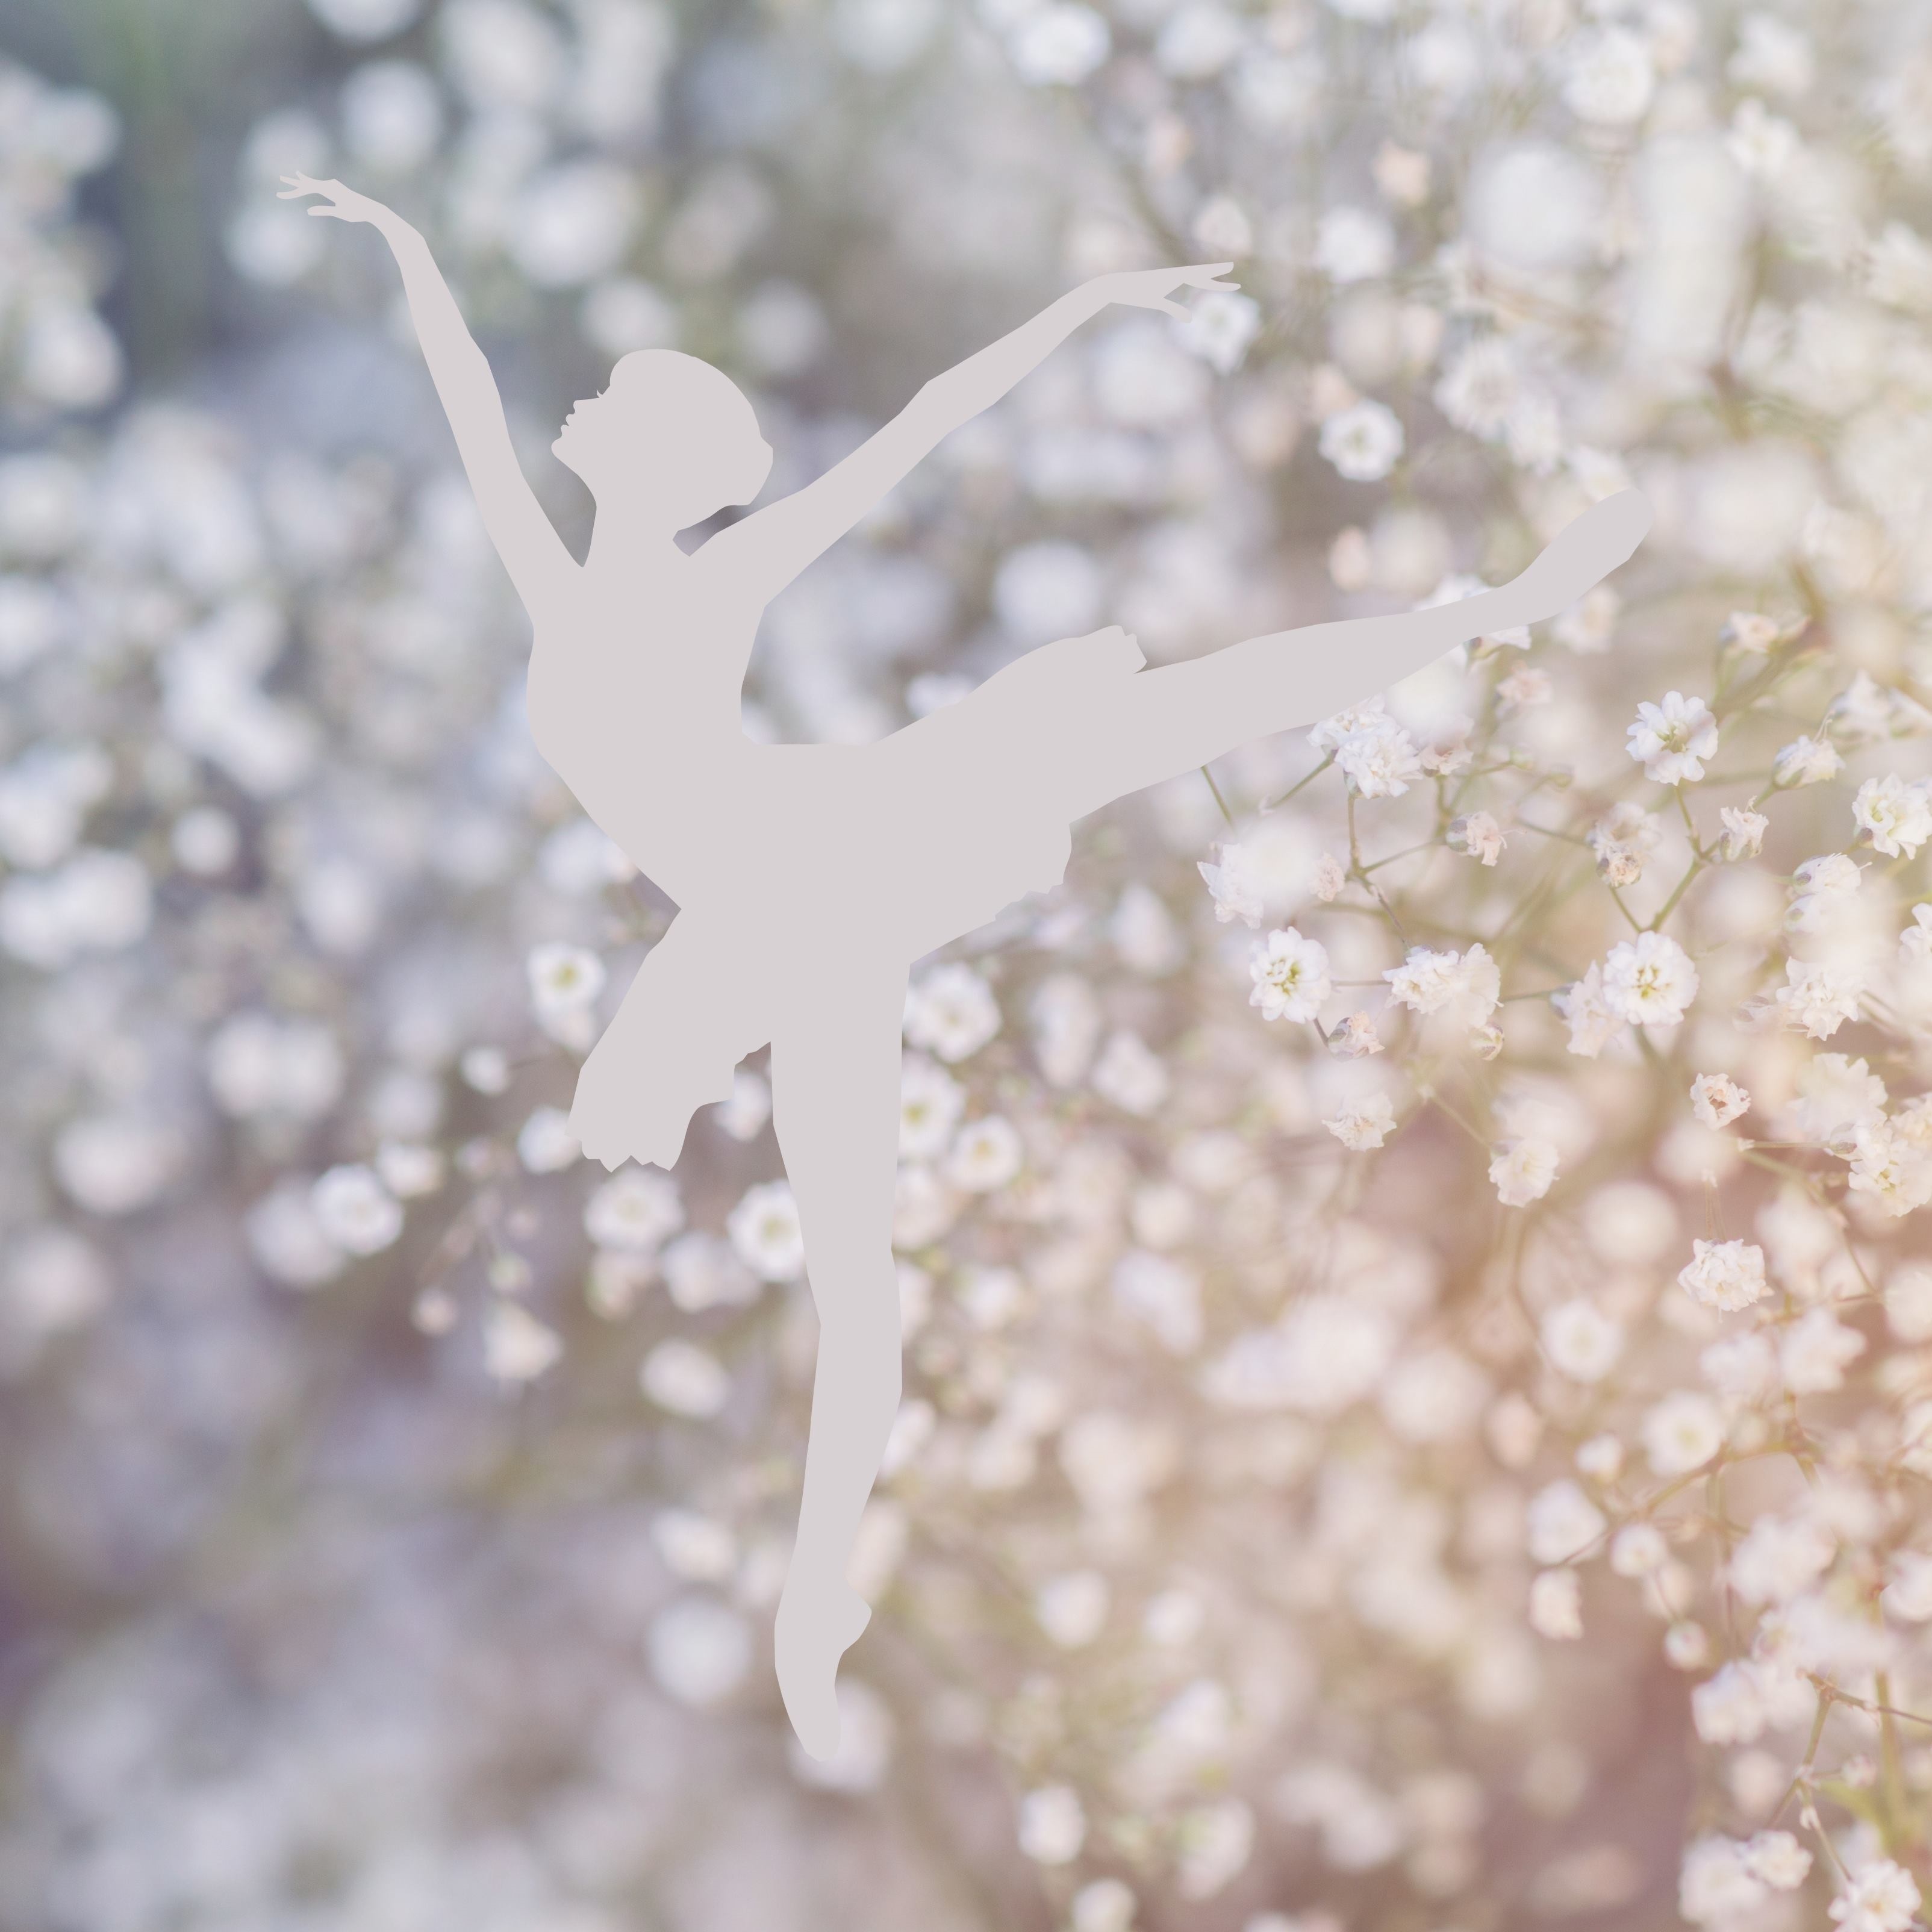 Ballerina Girl Dance White Dandelion Flowers iPad Wallpaper